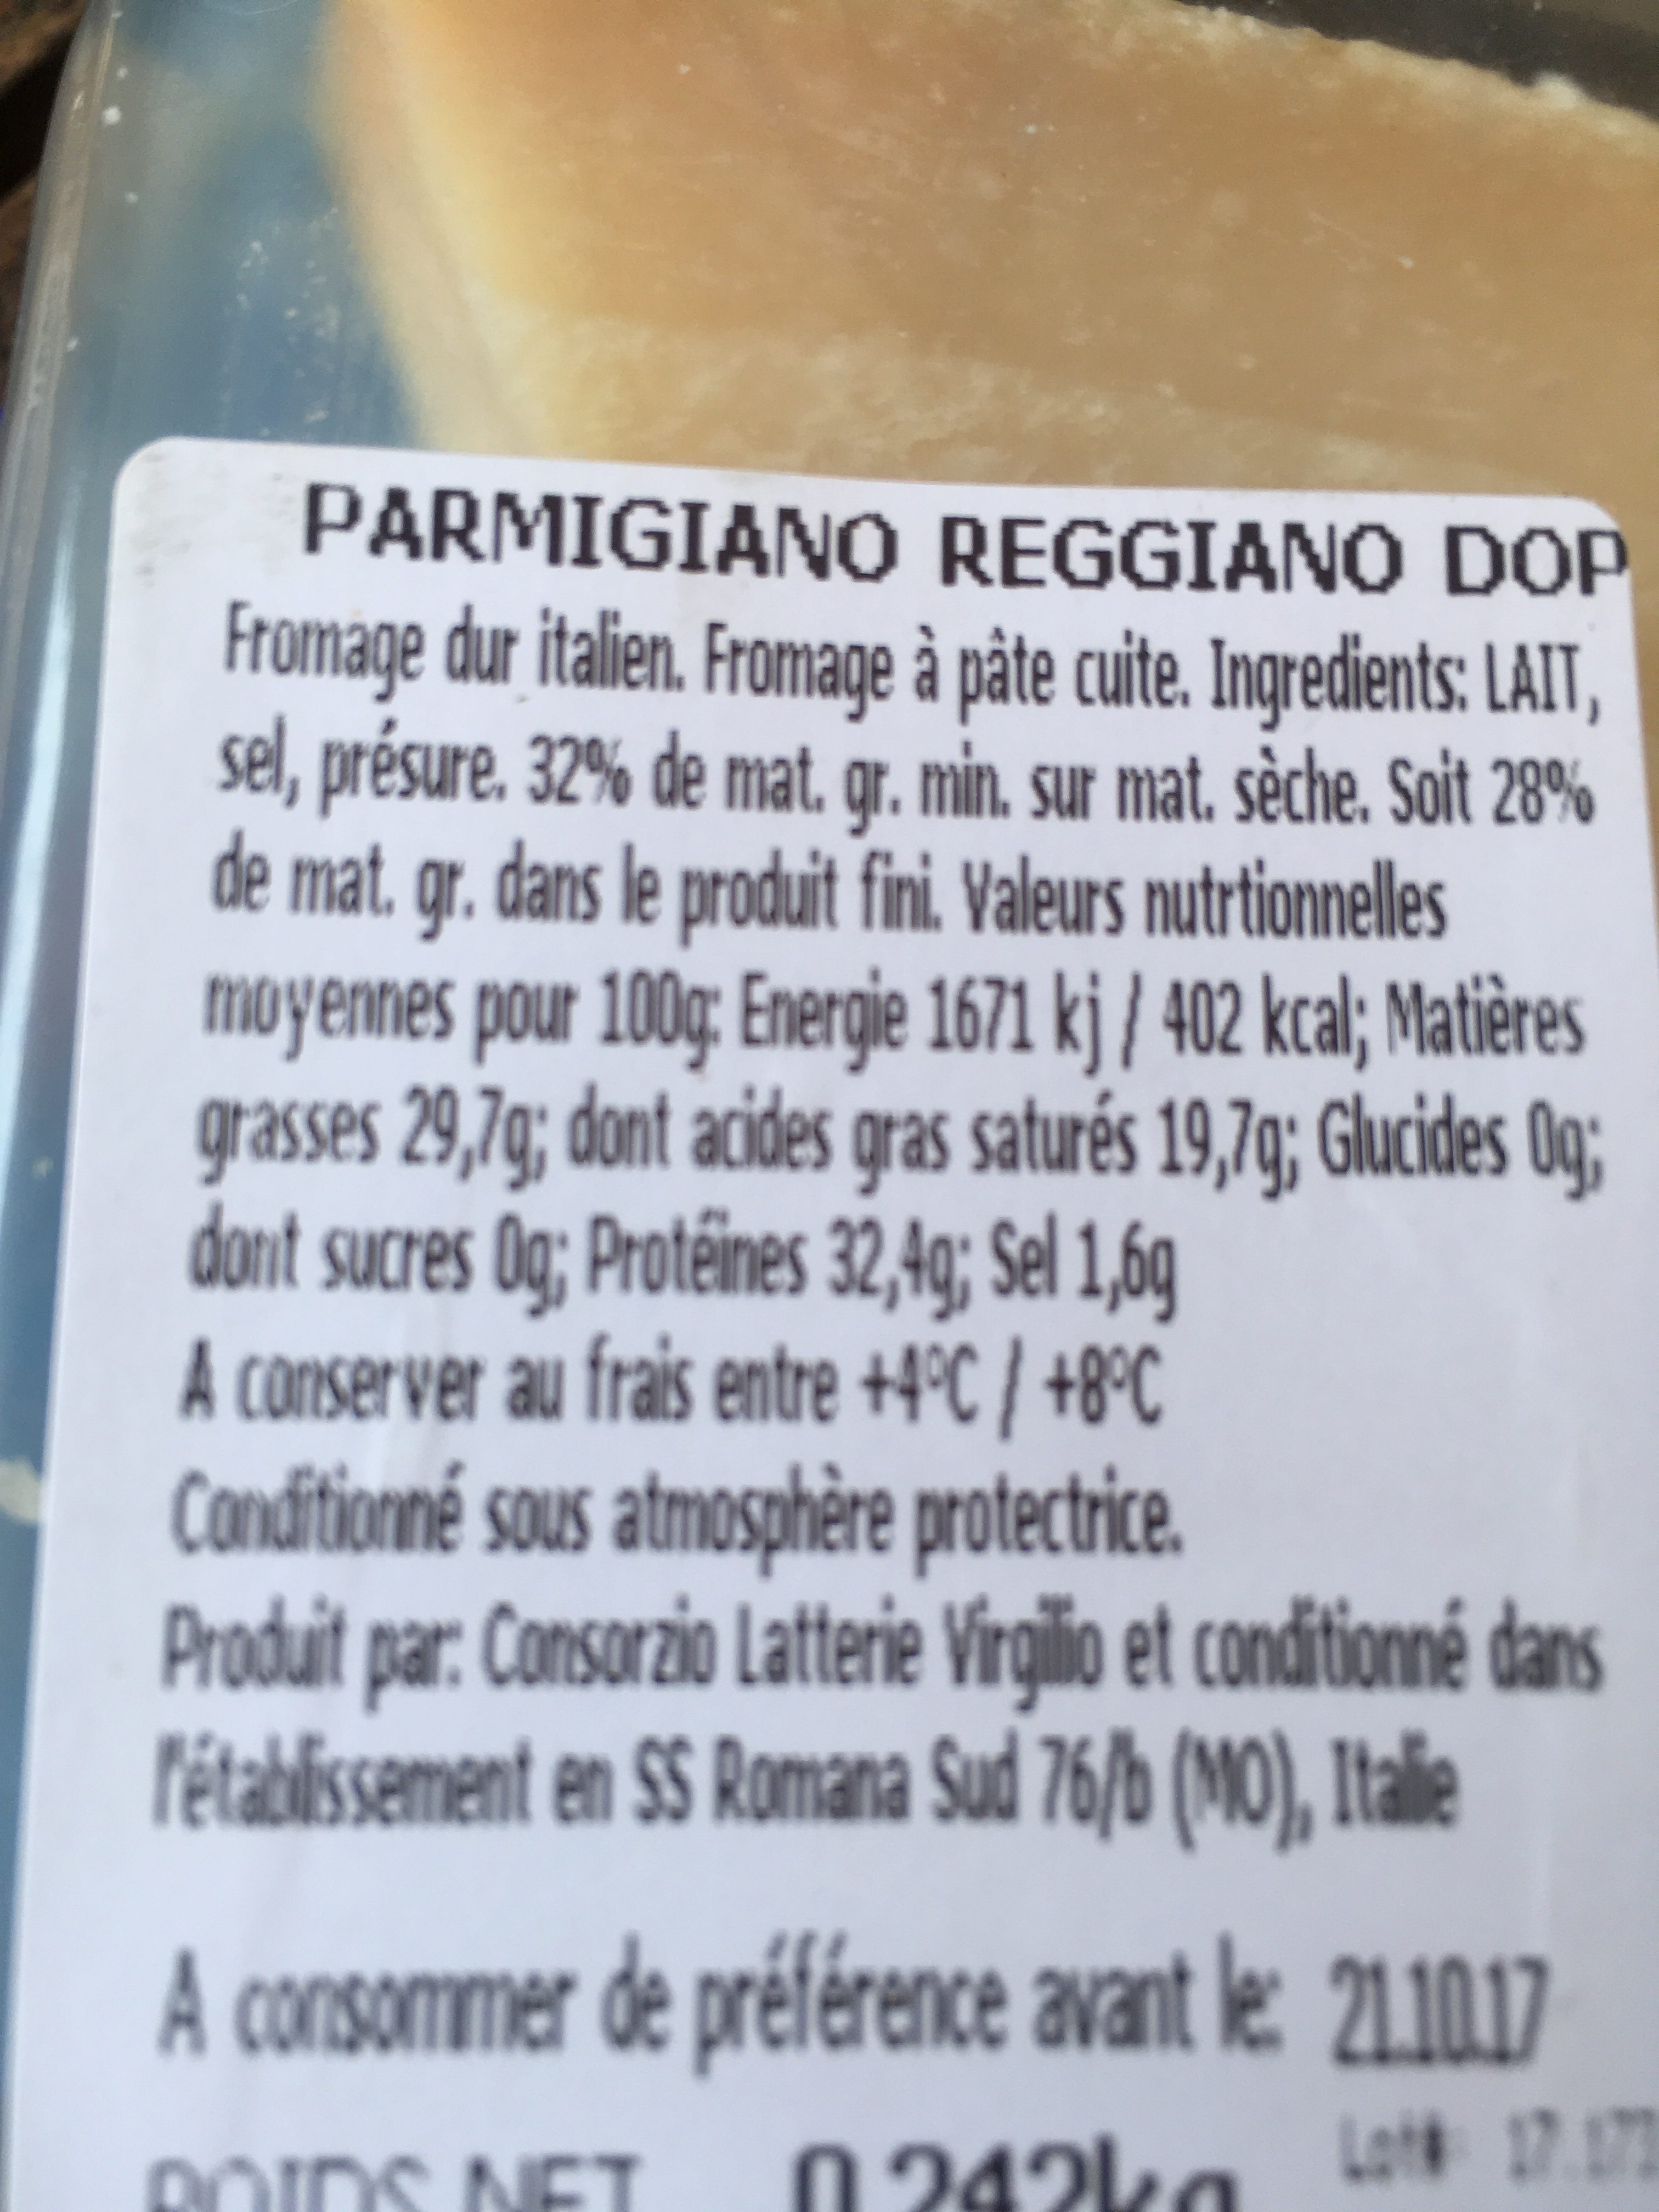 Parmigiano reggiano - Fromage dur italien - Fromage à pâte cuite - Ingrédients